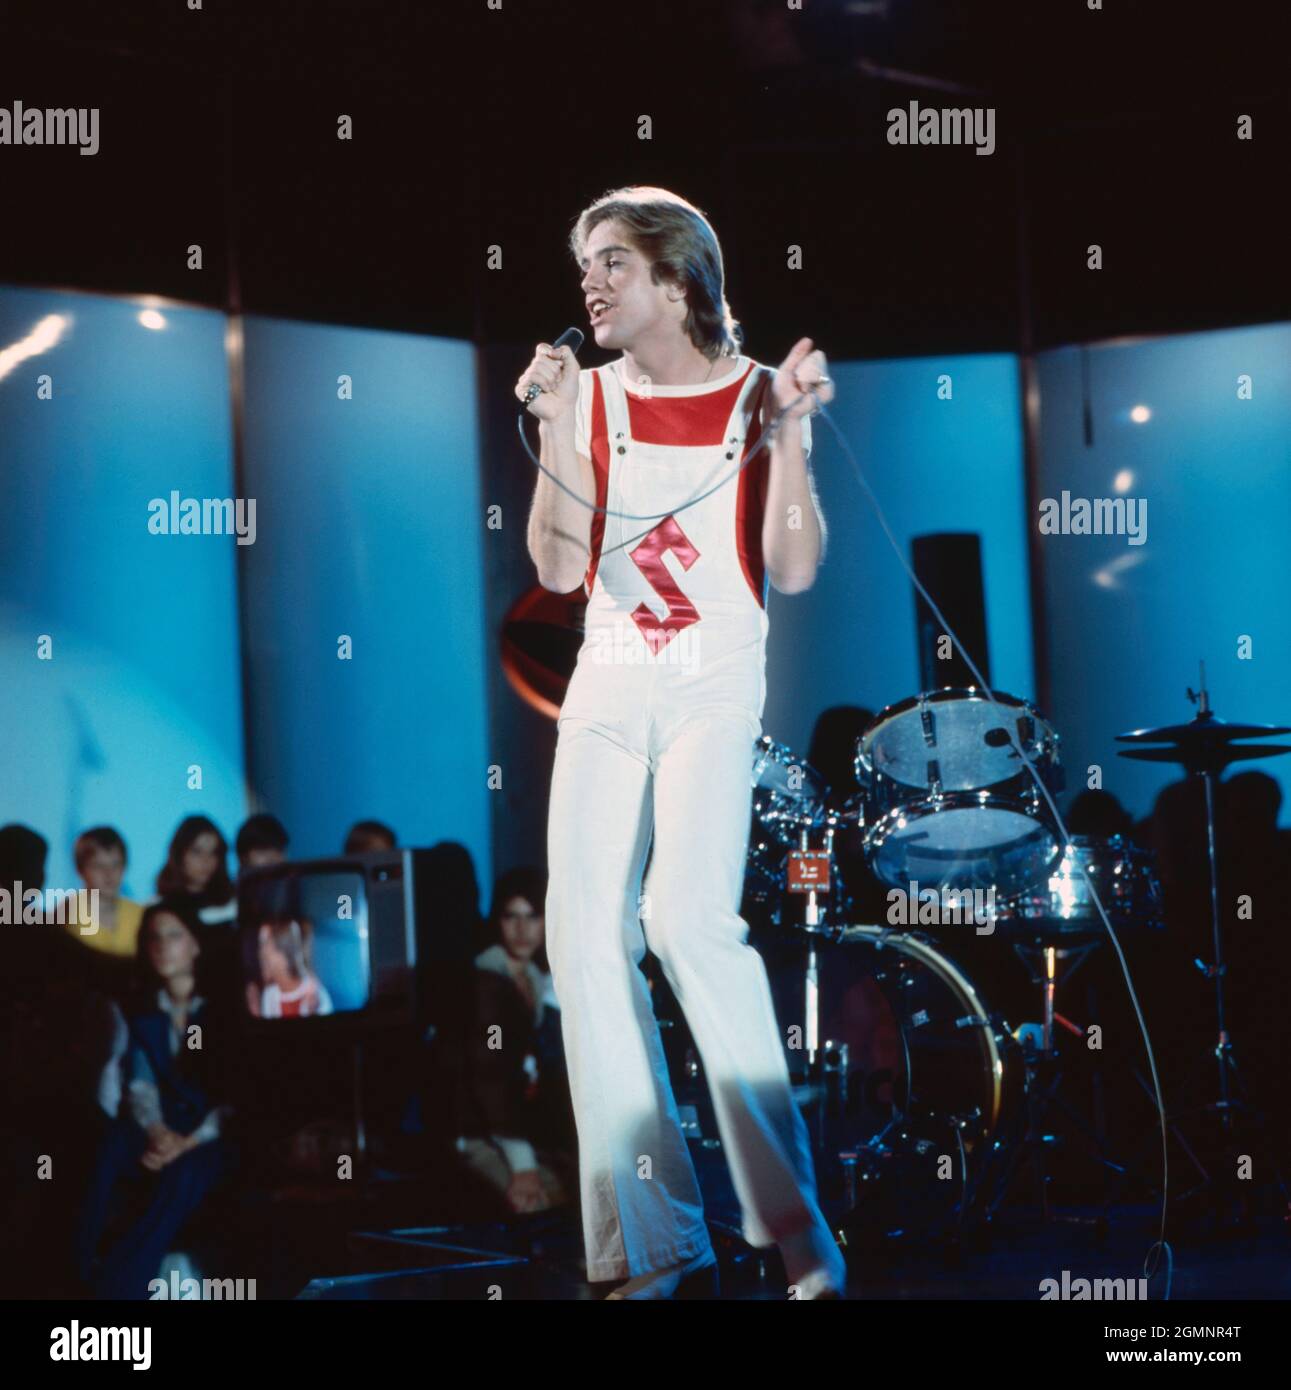 Shaun Cassidy, amerikanischer Popsänger und Schauspieler, bei einem Auftritt im deutschen Fernsehen, Deutschland um 1978. American pop songer and actor Shaun Cassidy performing on German TV, Germany around 1978. Stock Photo